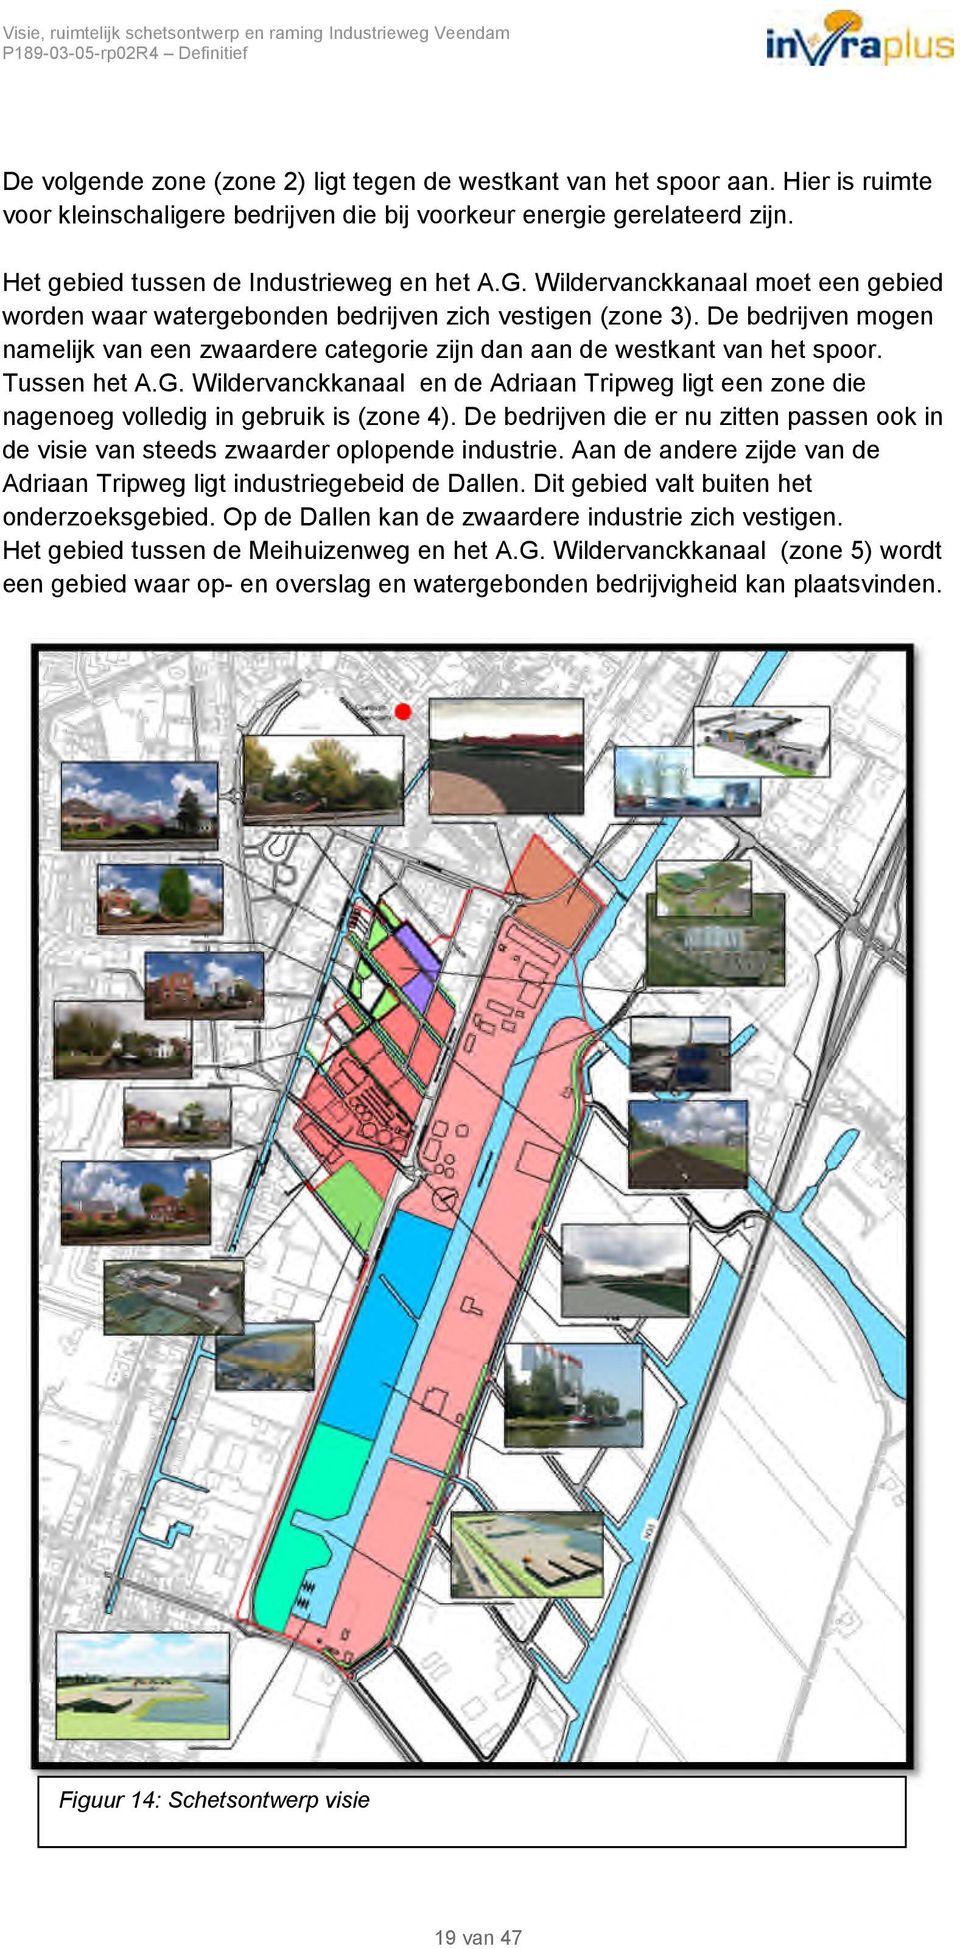 Tussen het A.G. Wildervanckkanaal en de Adriaan Tripweg ligt een zone die nagenoeg volledig in gebruik is (zone 4).